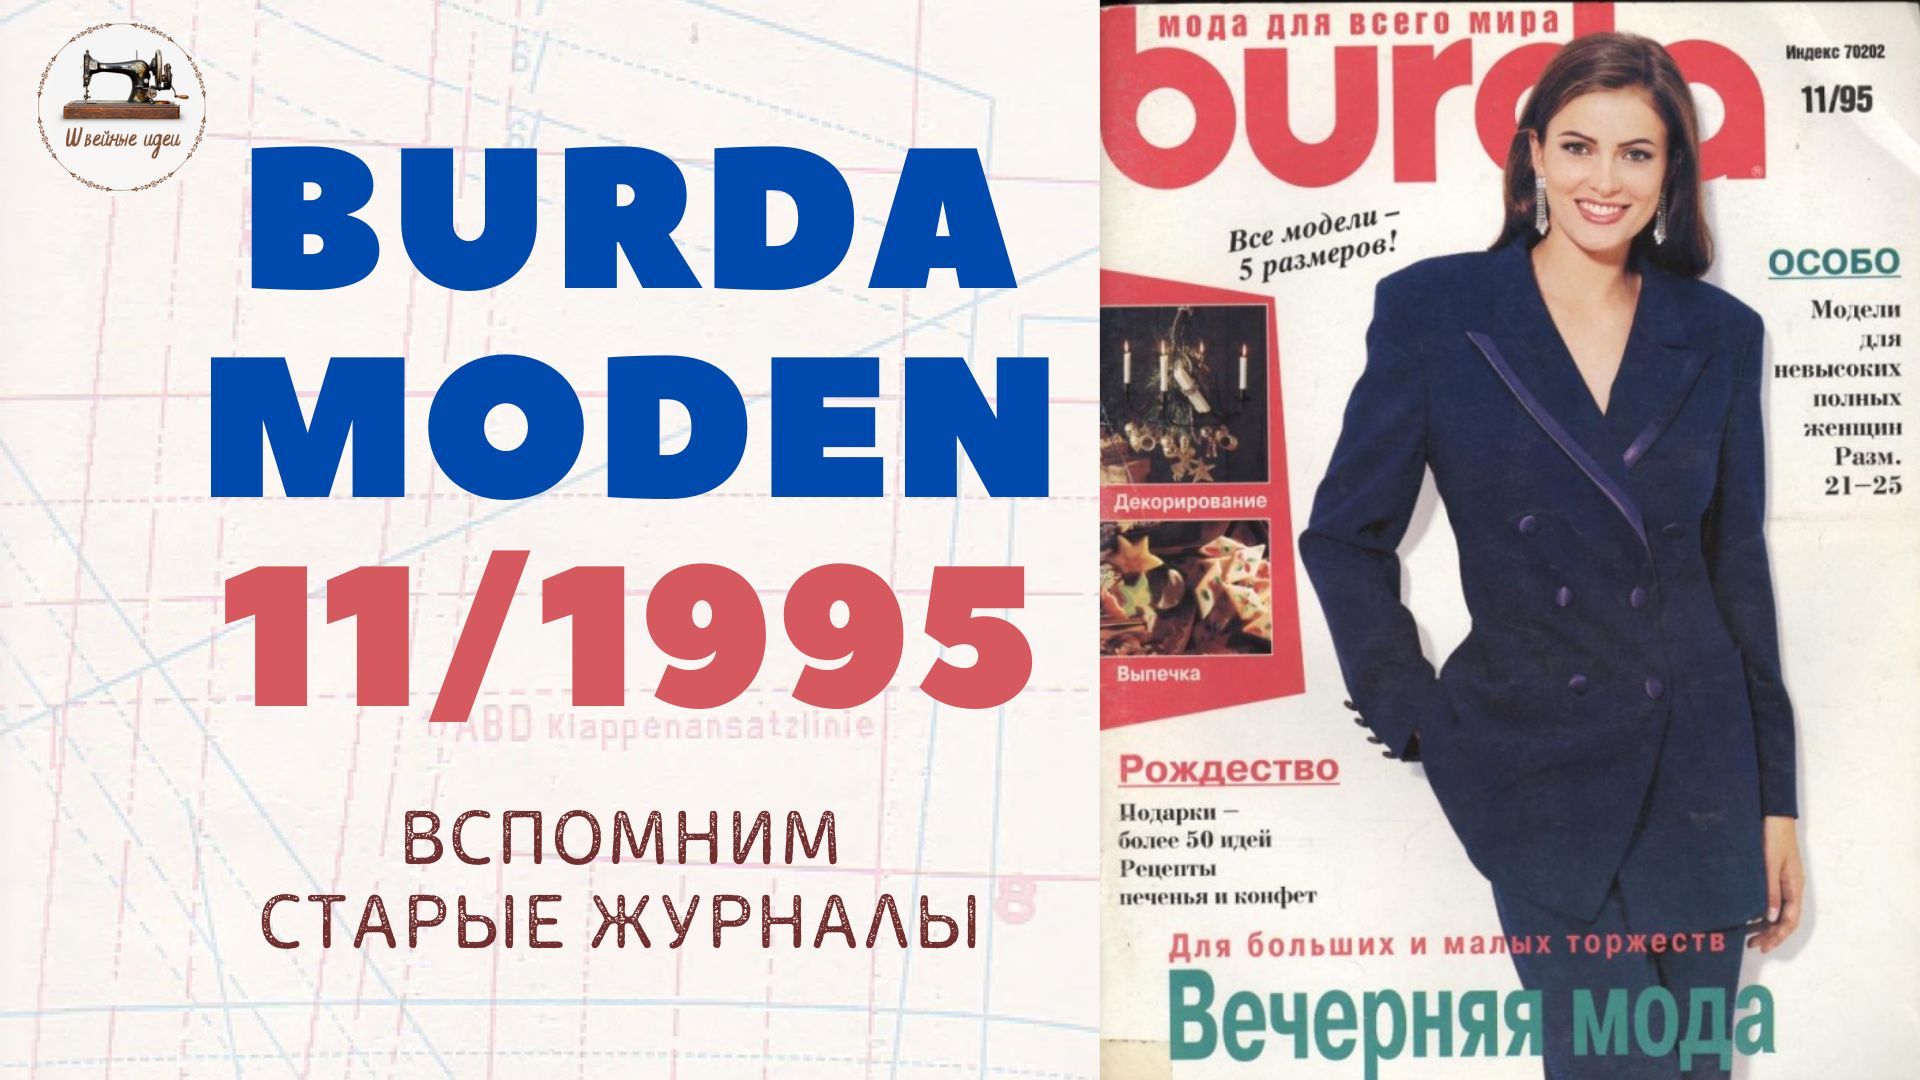 Burda Moden 11/1995. Журнал прошлого столетия. Элегантные образы из 90-х